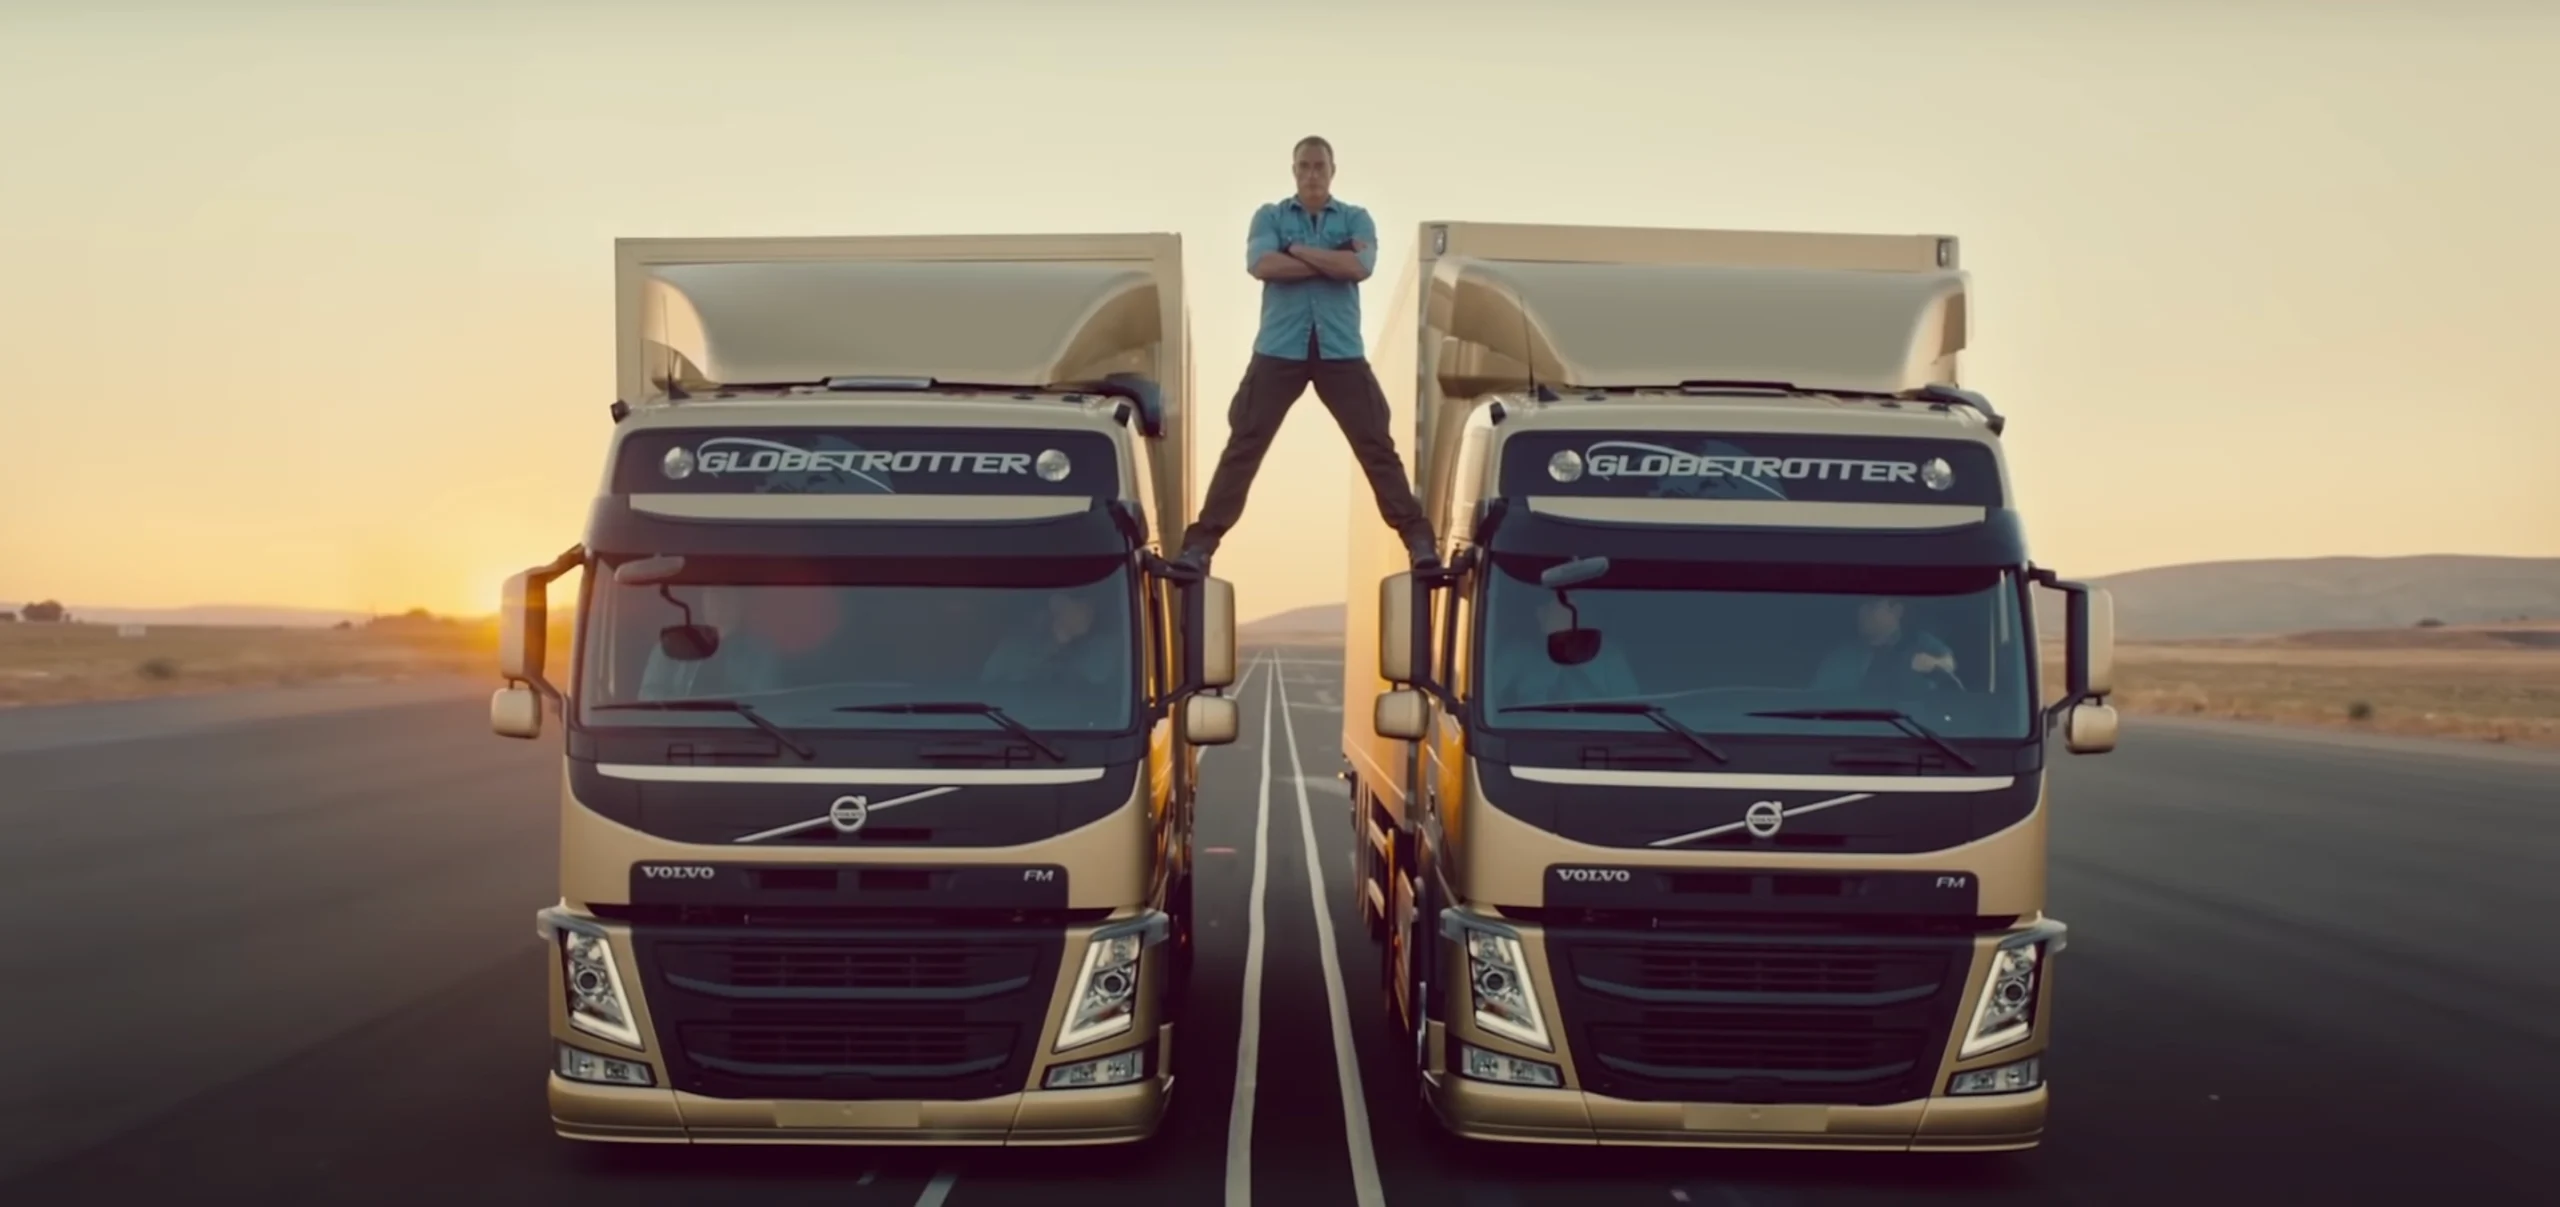 Propaganda criativa com caminhões da empresa Volvo